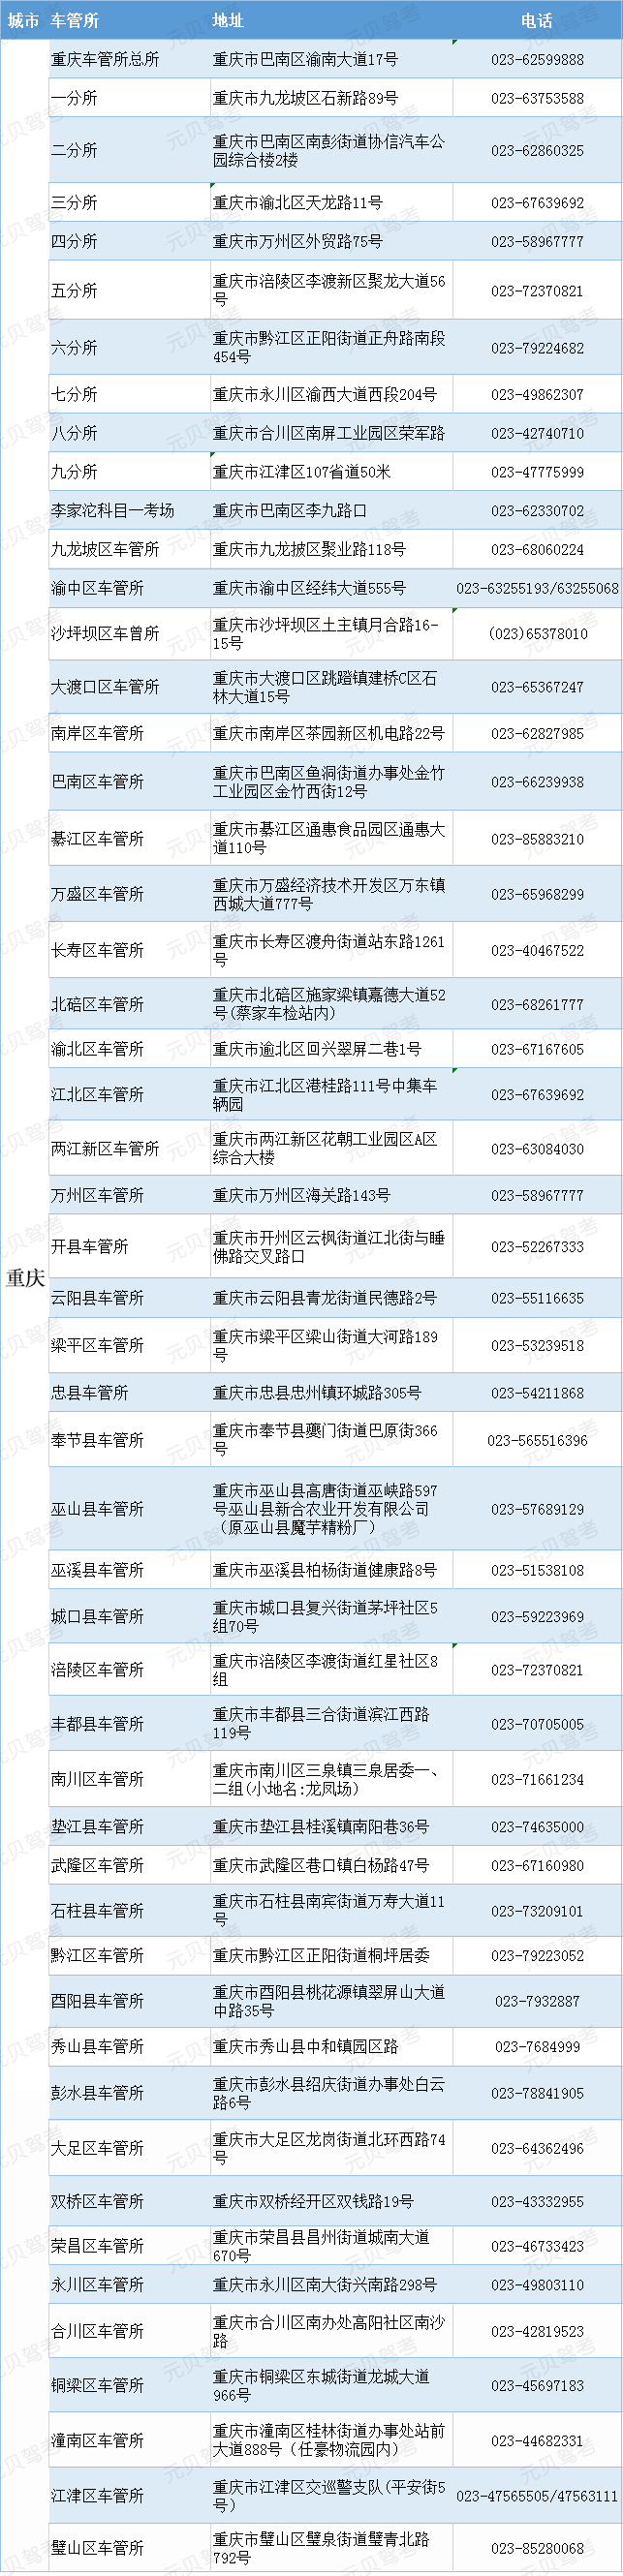 重庆市车管所地址及工作电话